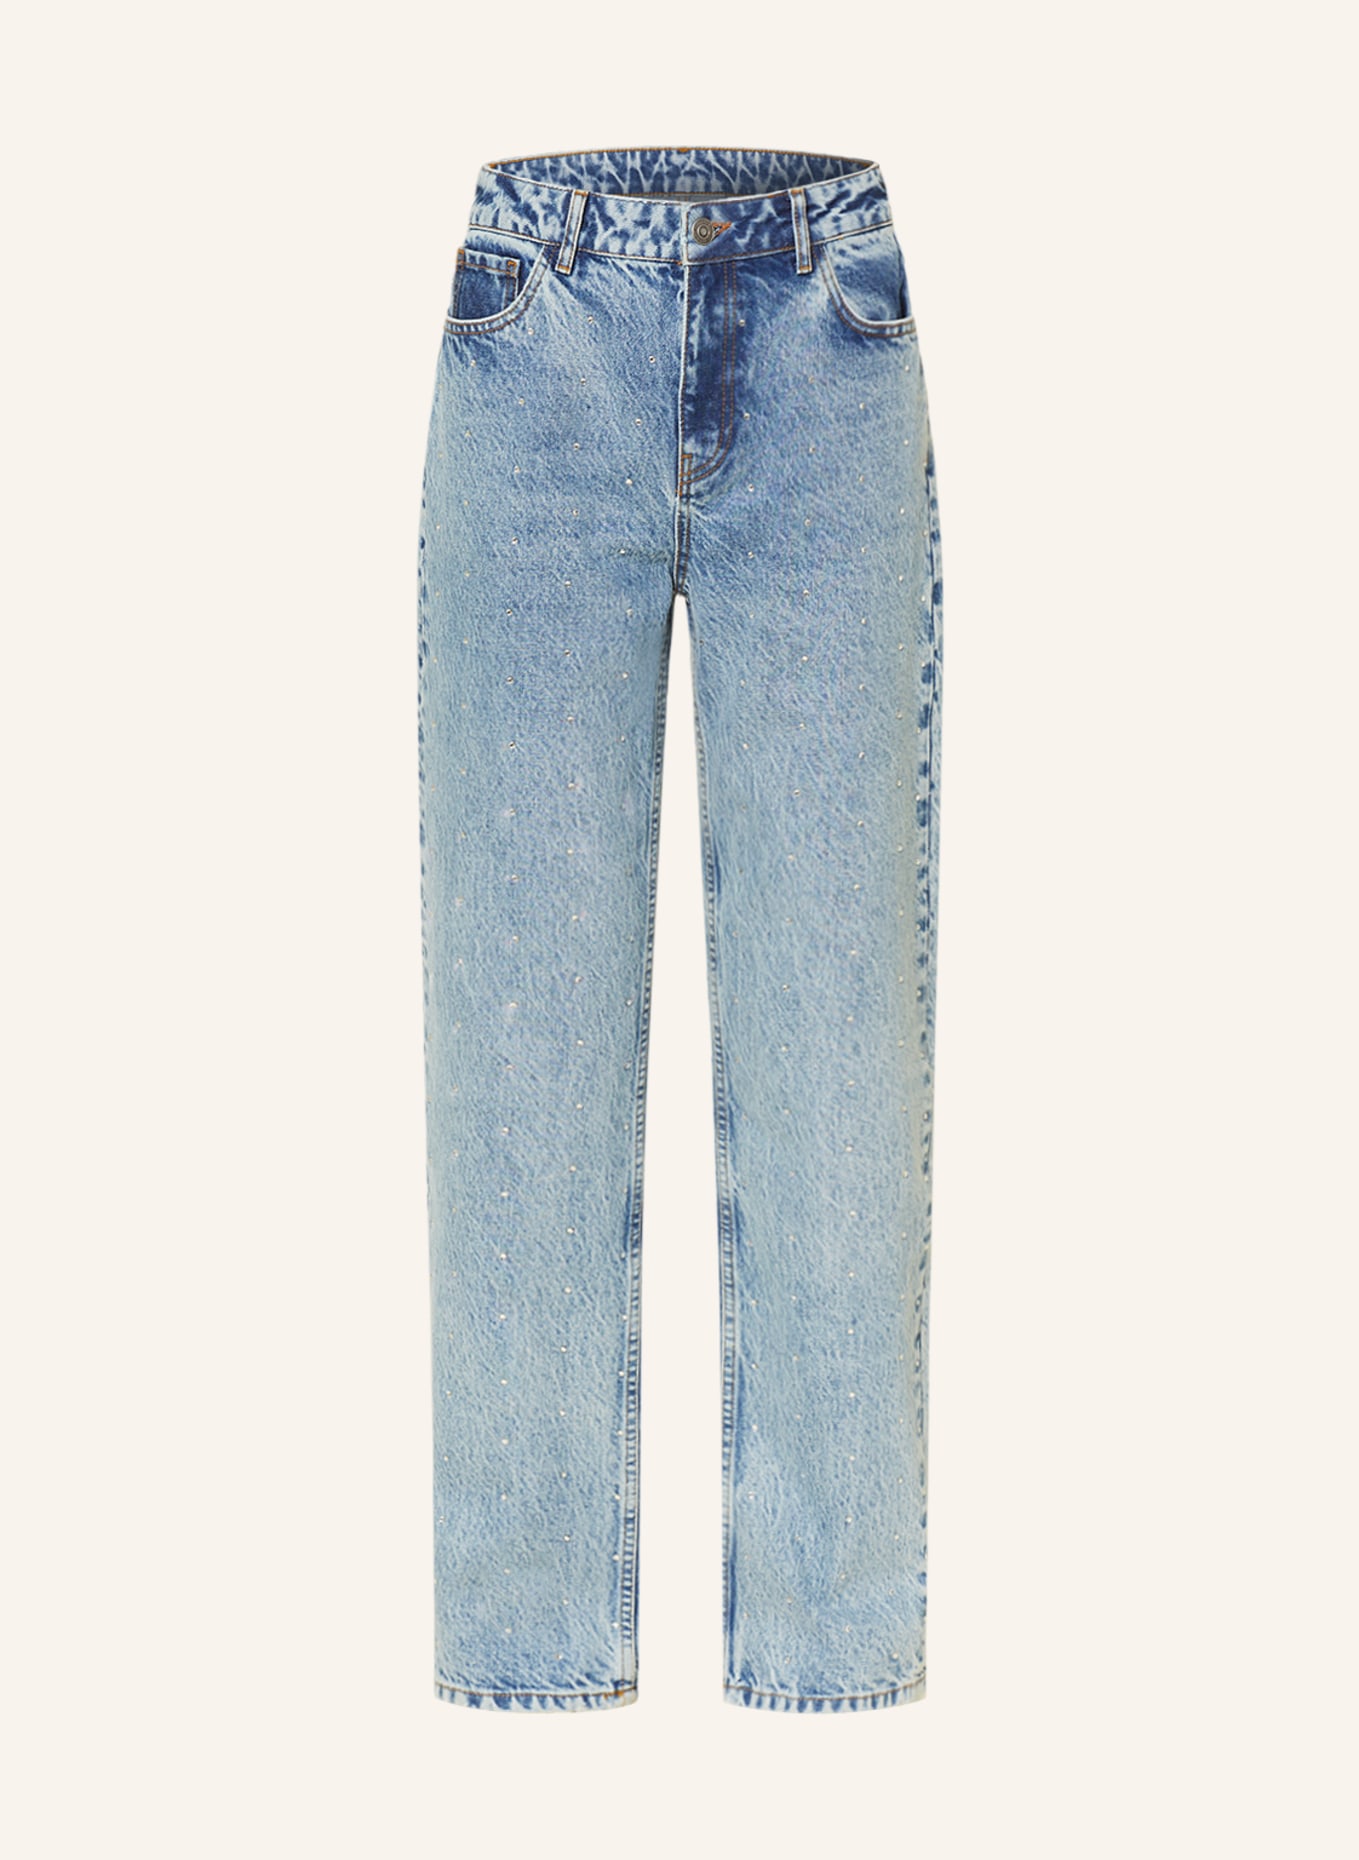 COLOURFUL REBEL Straight Jeans JONES mit Schmucksteinen, Farbe: 565 Mid blue denim (Bild 1)